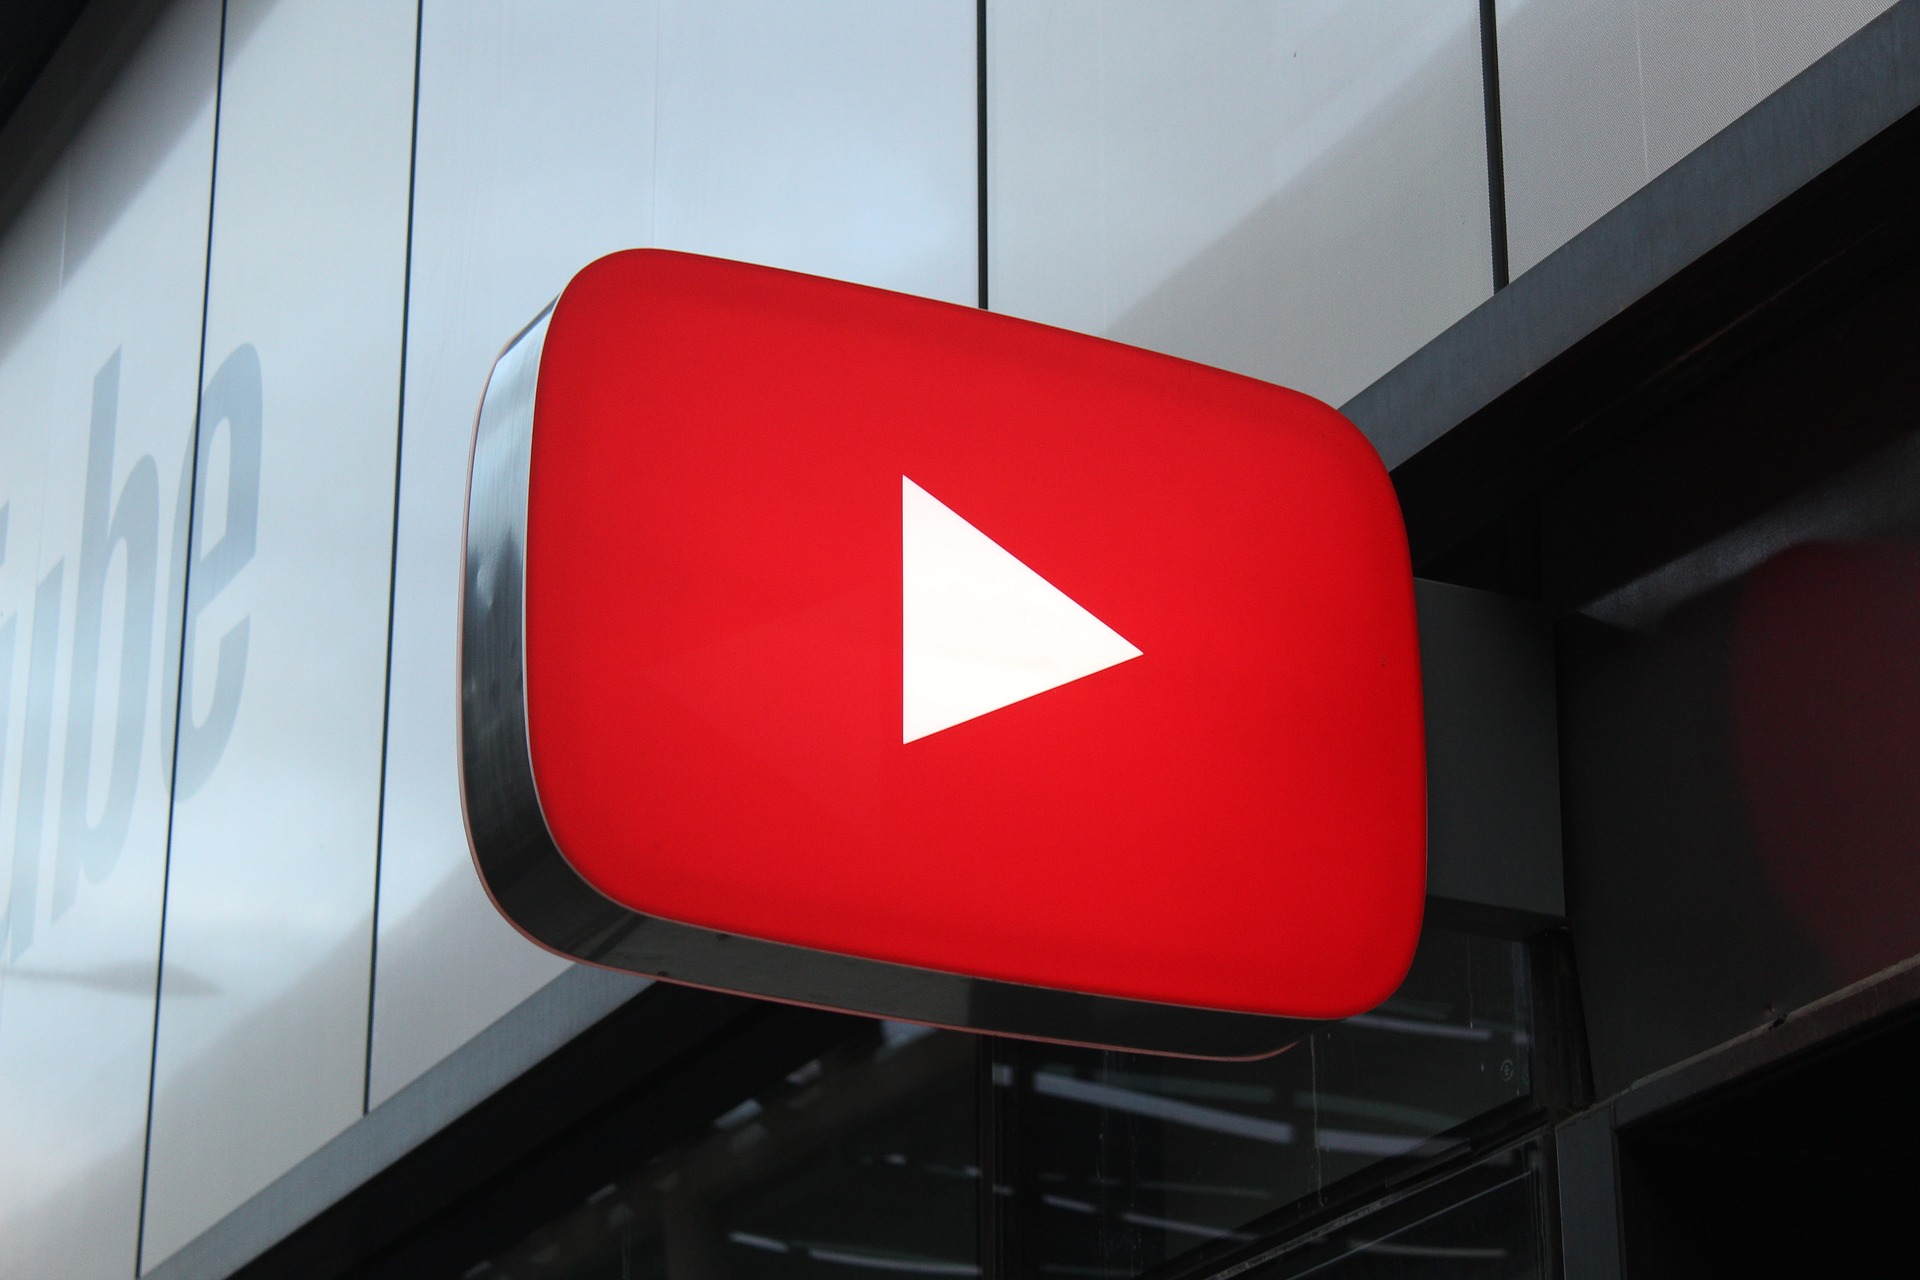 YouTube veut vendre les produits présents dans les vidéos... un futur bien sombre pour la plateforme